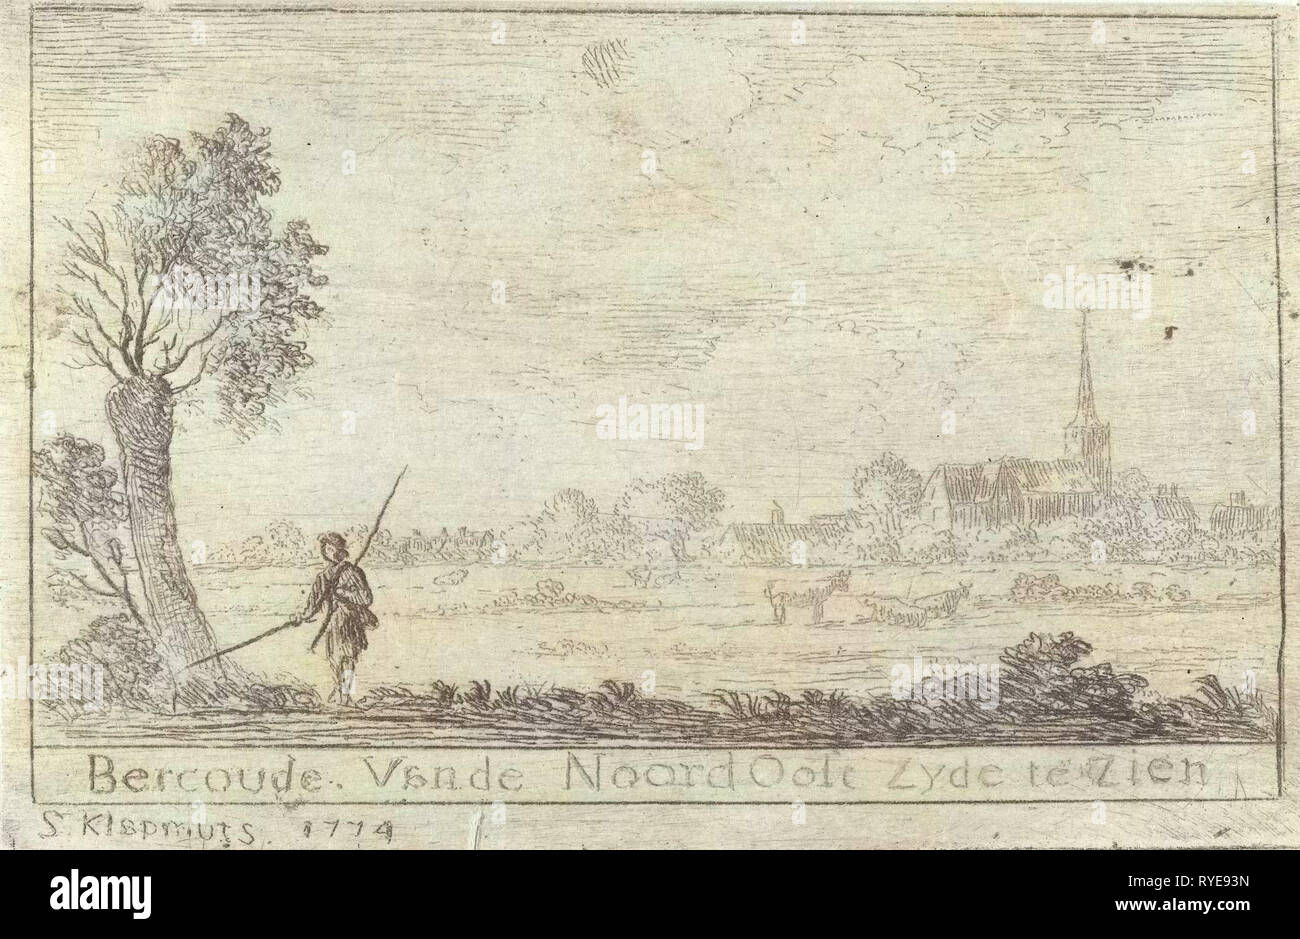 Vue sur Bercoude, Simon Klapmuts, 1774 Banque D'Images